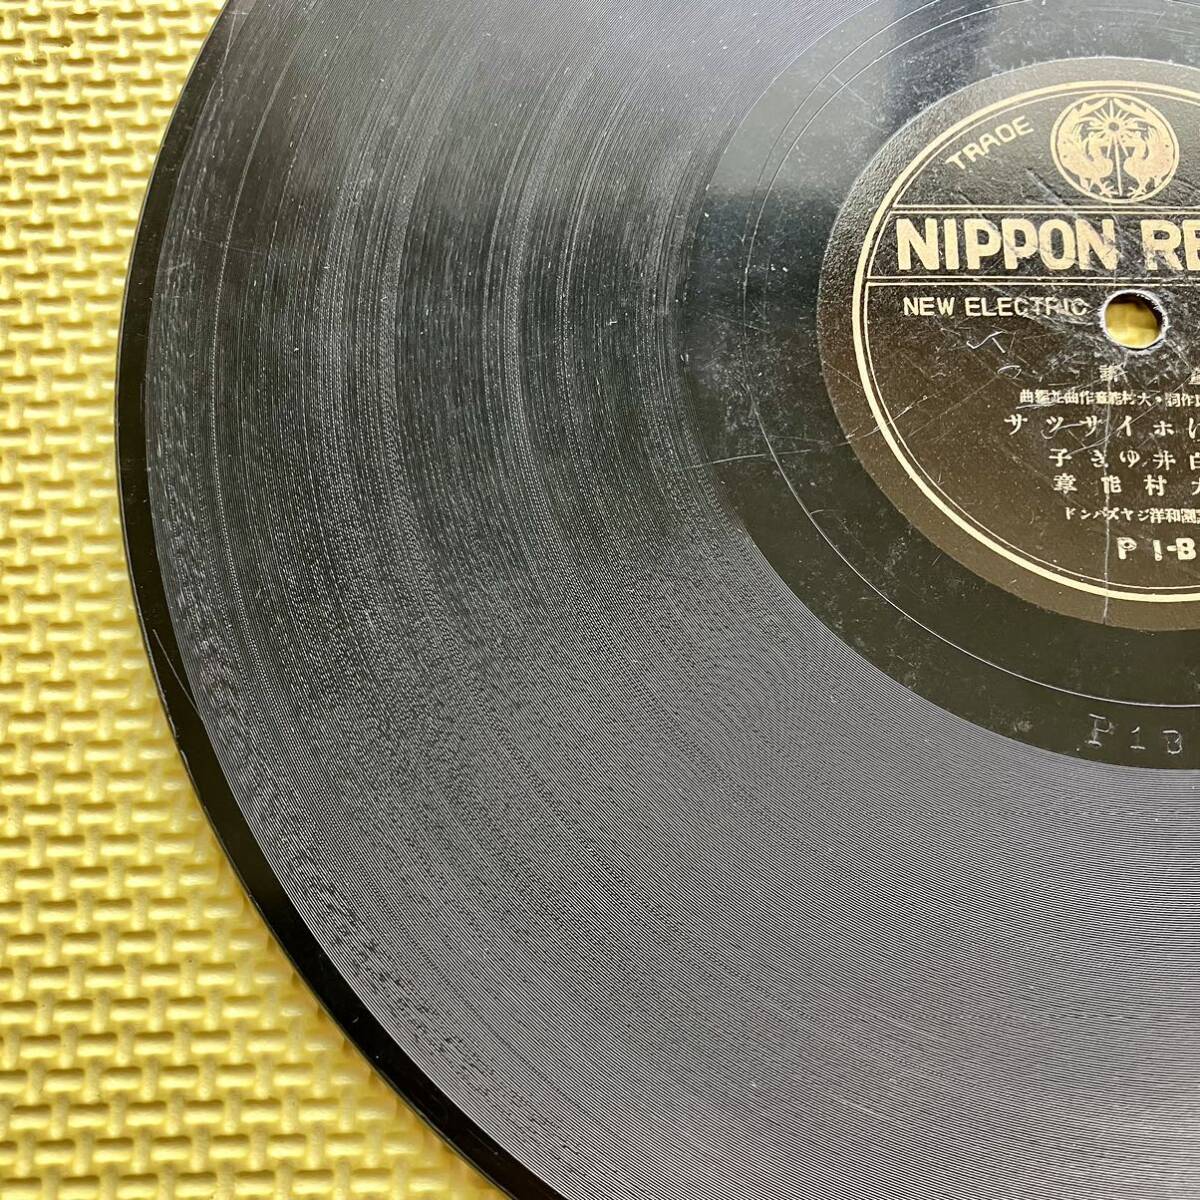 NIPPON RECORD 凱旋桃太郎 雪なげホイサツサ SP盤 レコード_画像6